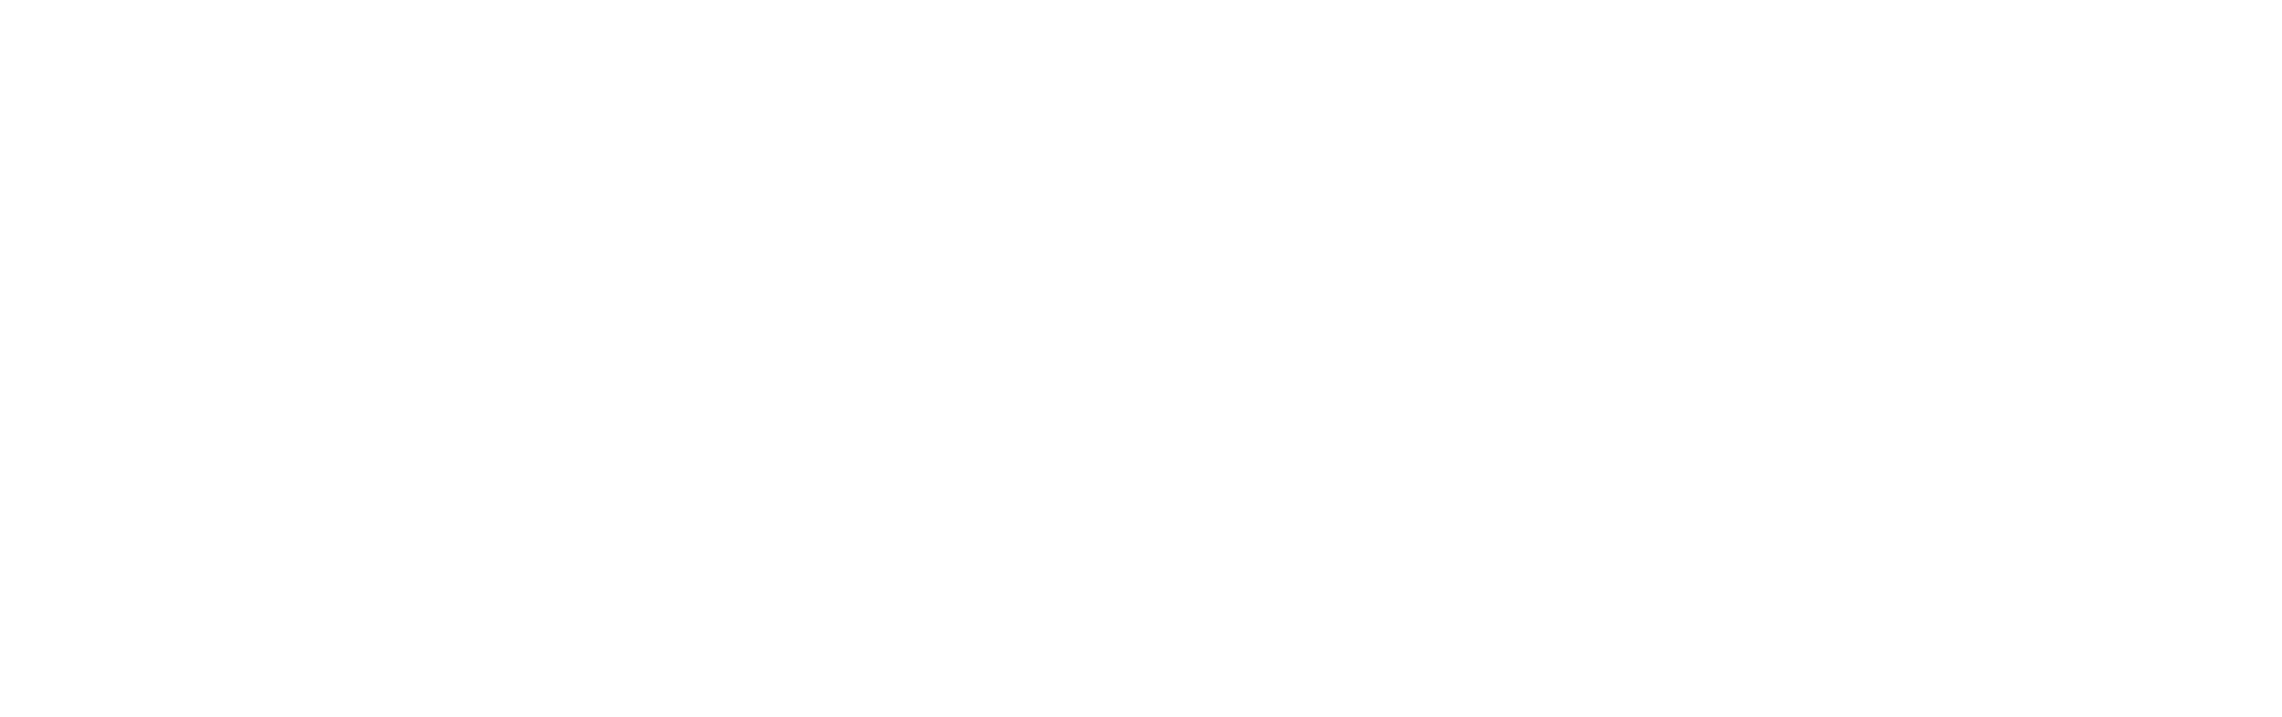 Logo Coca Cola màu trắng